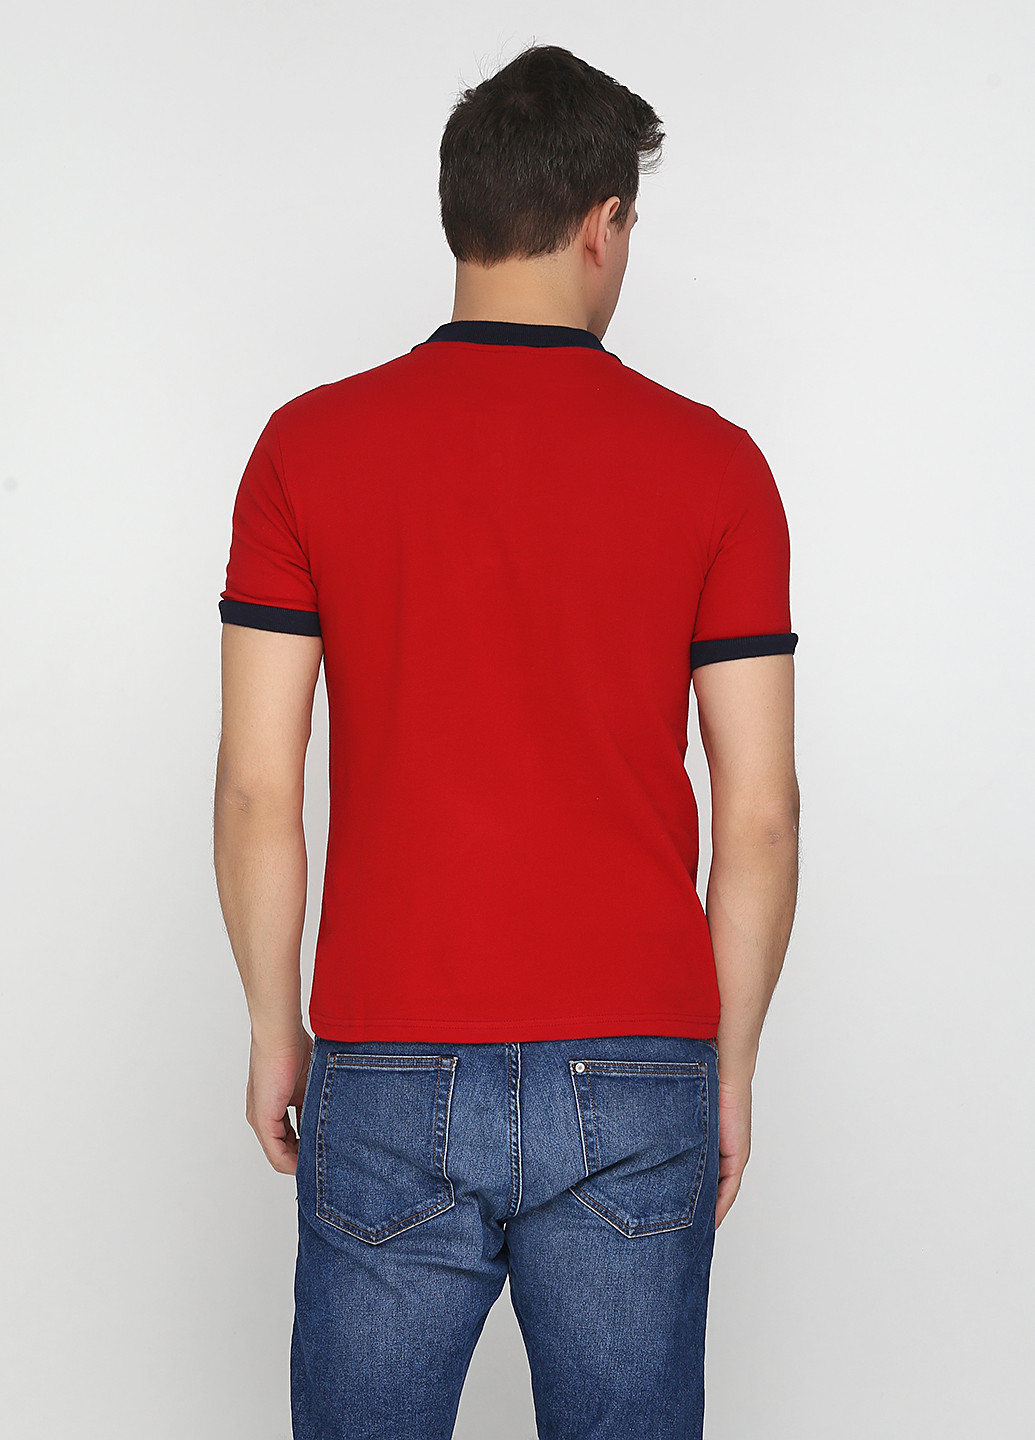 Красная футболка-поло для мужчин Chiarotex с рисунком